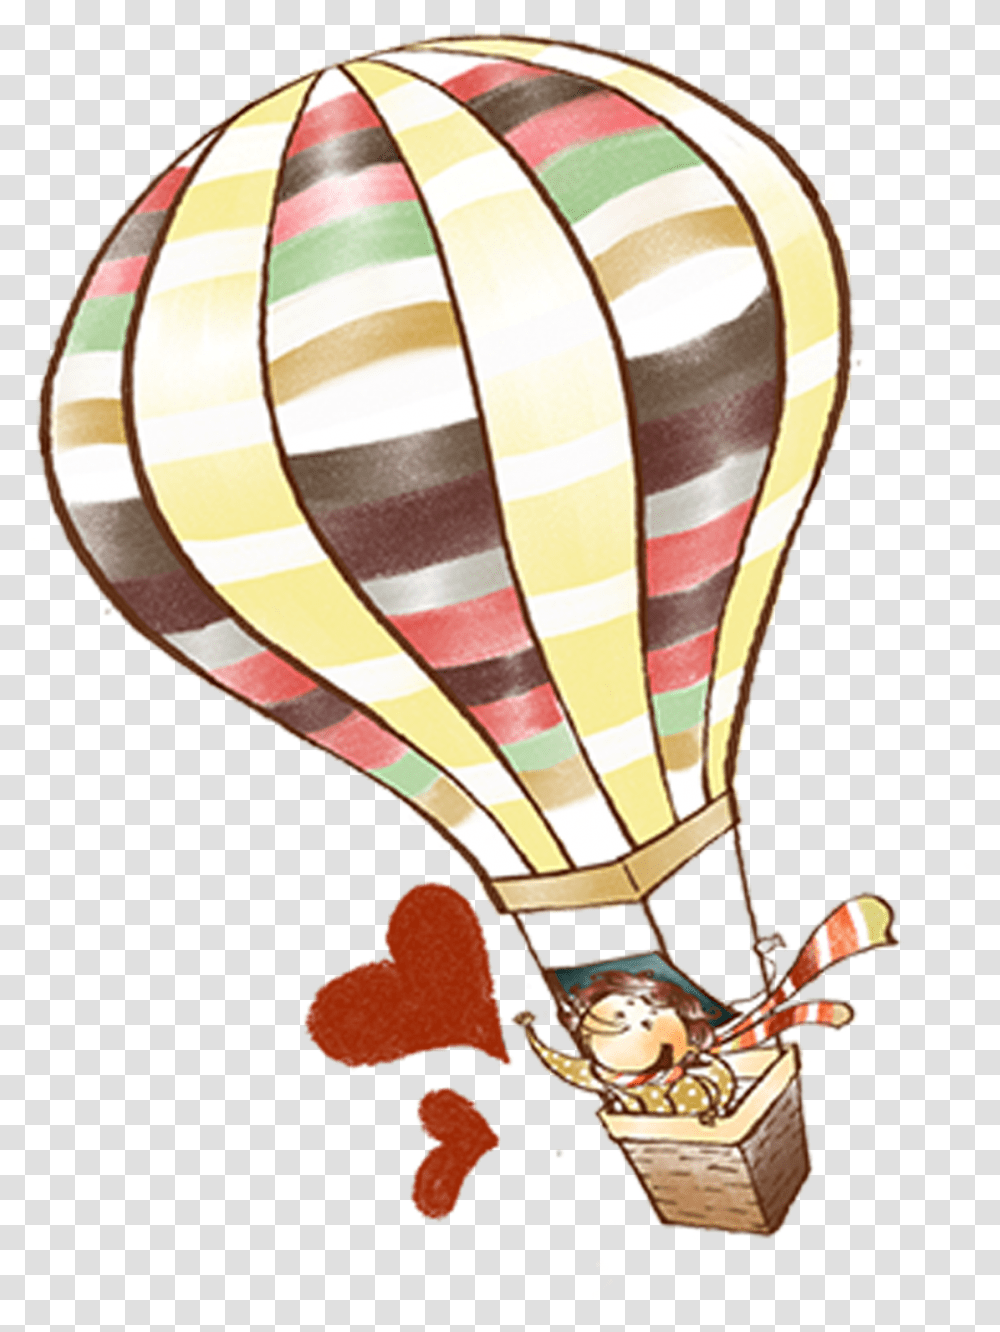 Hot Air Balloon Element Drawing Hot Air Balloons, Aircraft, Vehicle, Transportation, Lamp Transparent Png